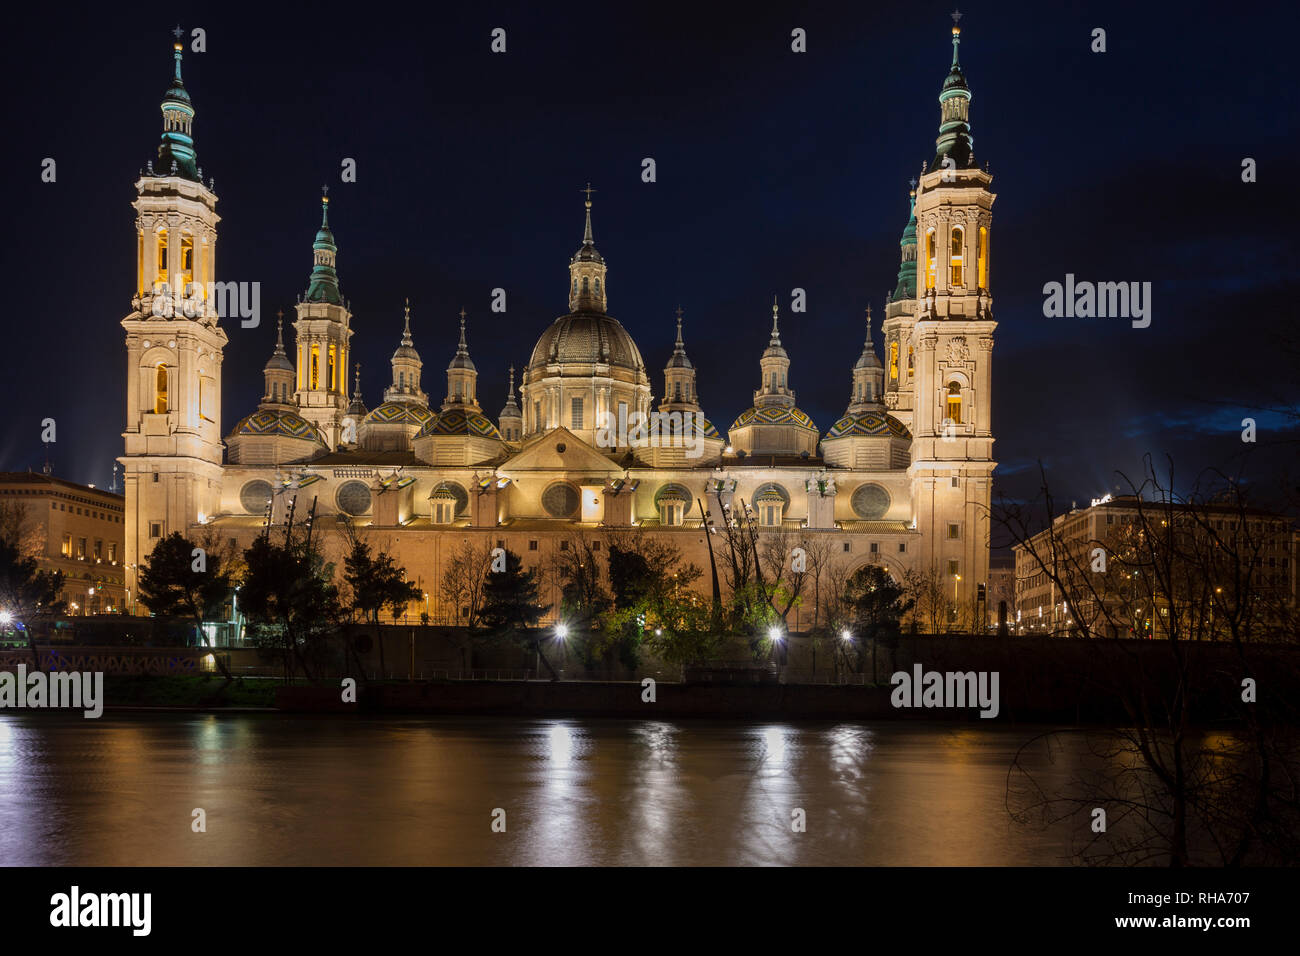 Night view of El PIlar basilica, Zaragoza. Spain Stock Photo